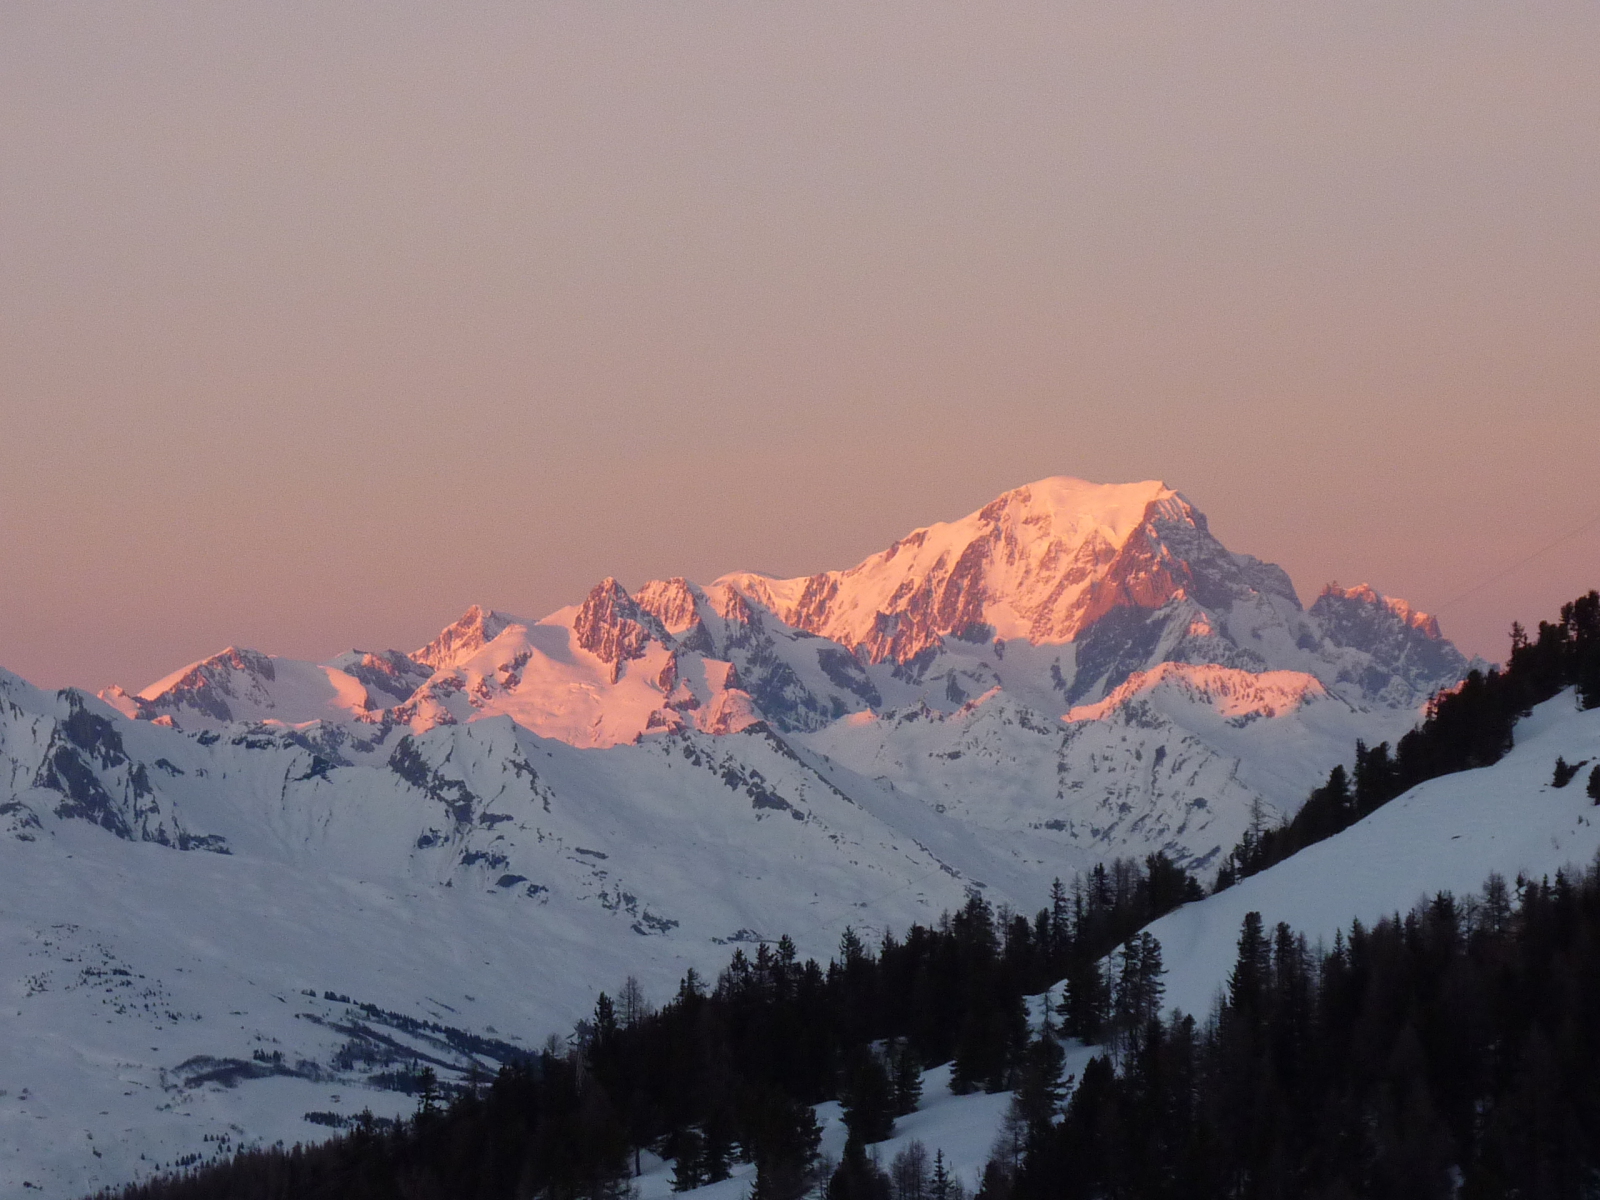 ha szerencséd van a szálassal reggeli közben a Mont Blanc is beköszön